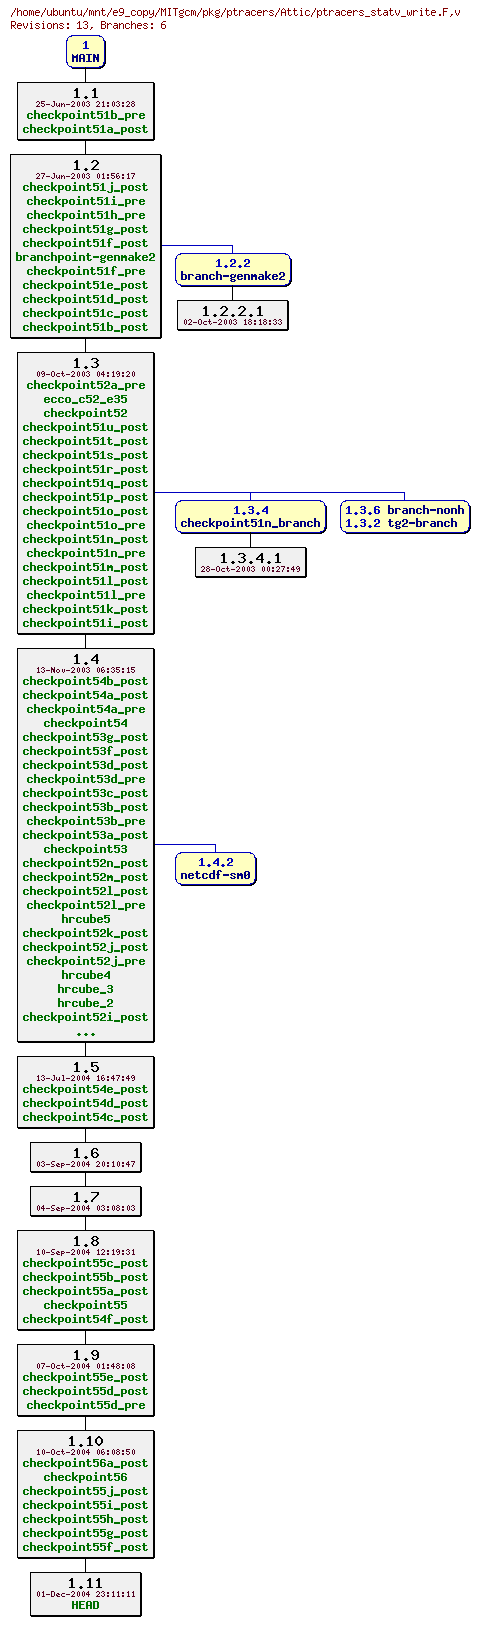 Revisions of MITgcm/pkg/ptracers/ptracers_statv_write.F